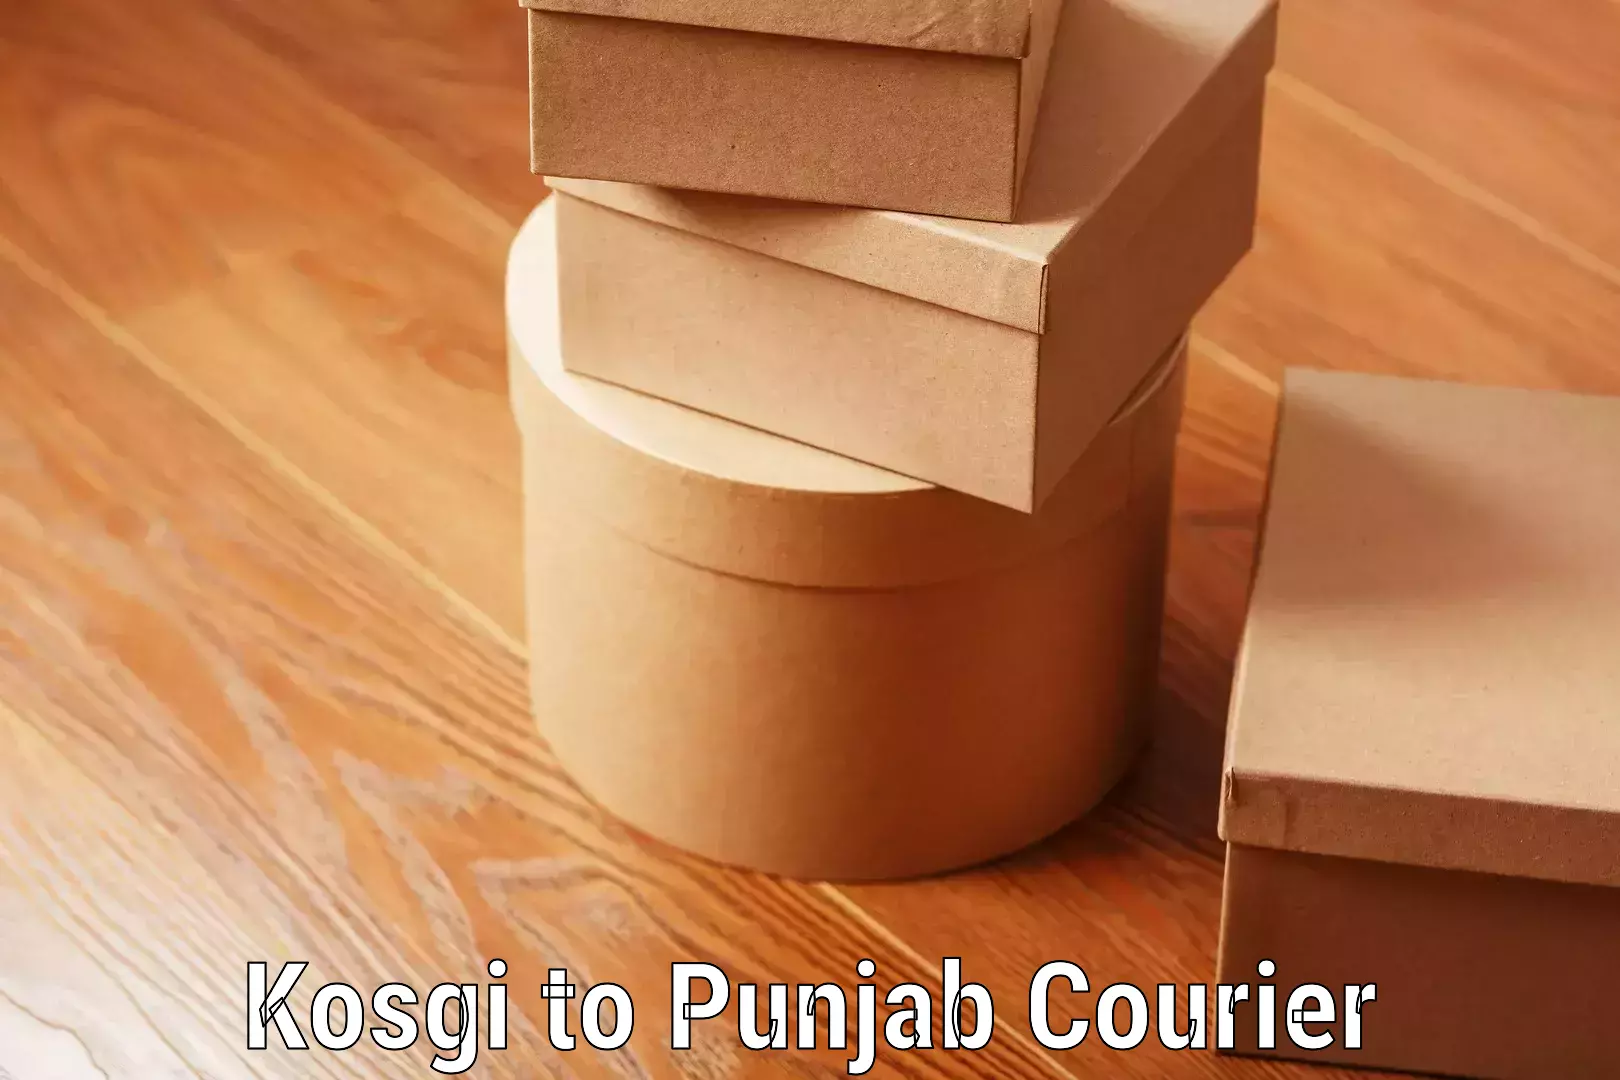 Luggage shipping discounts Kosgi to Punjab